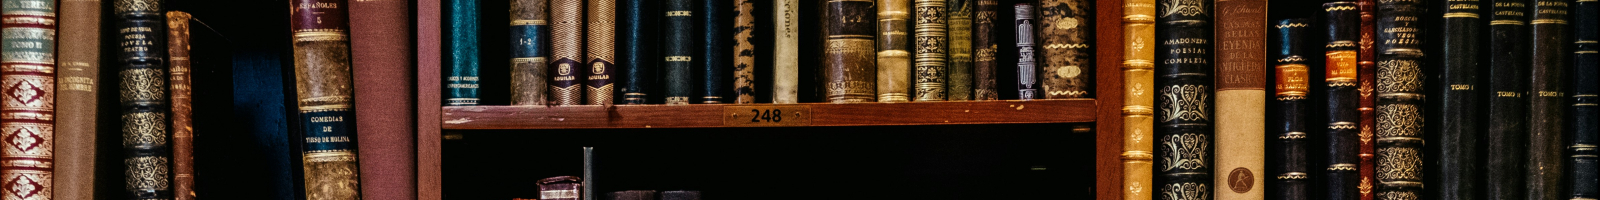 Old books on bookshelves